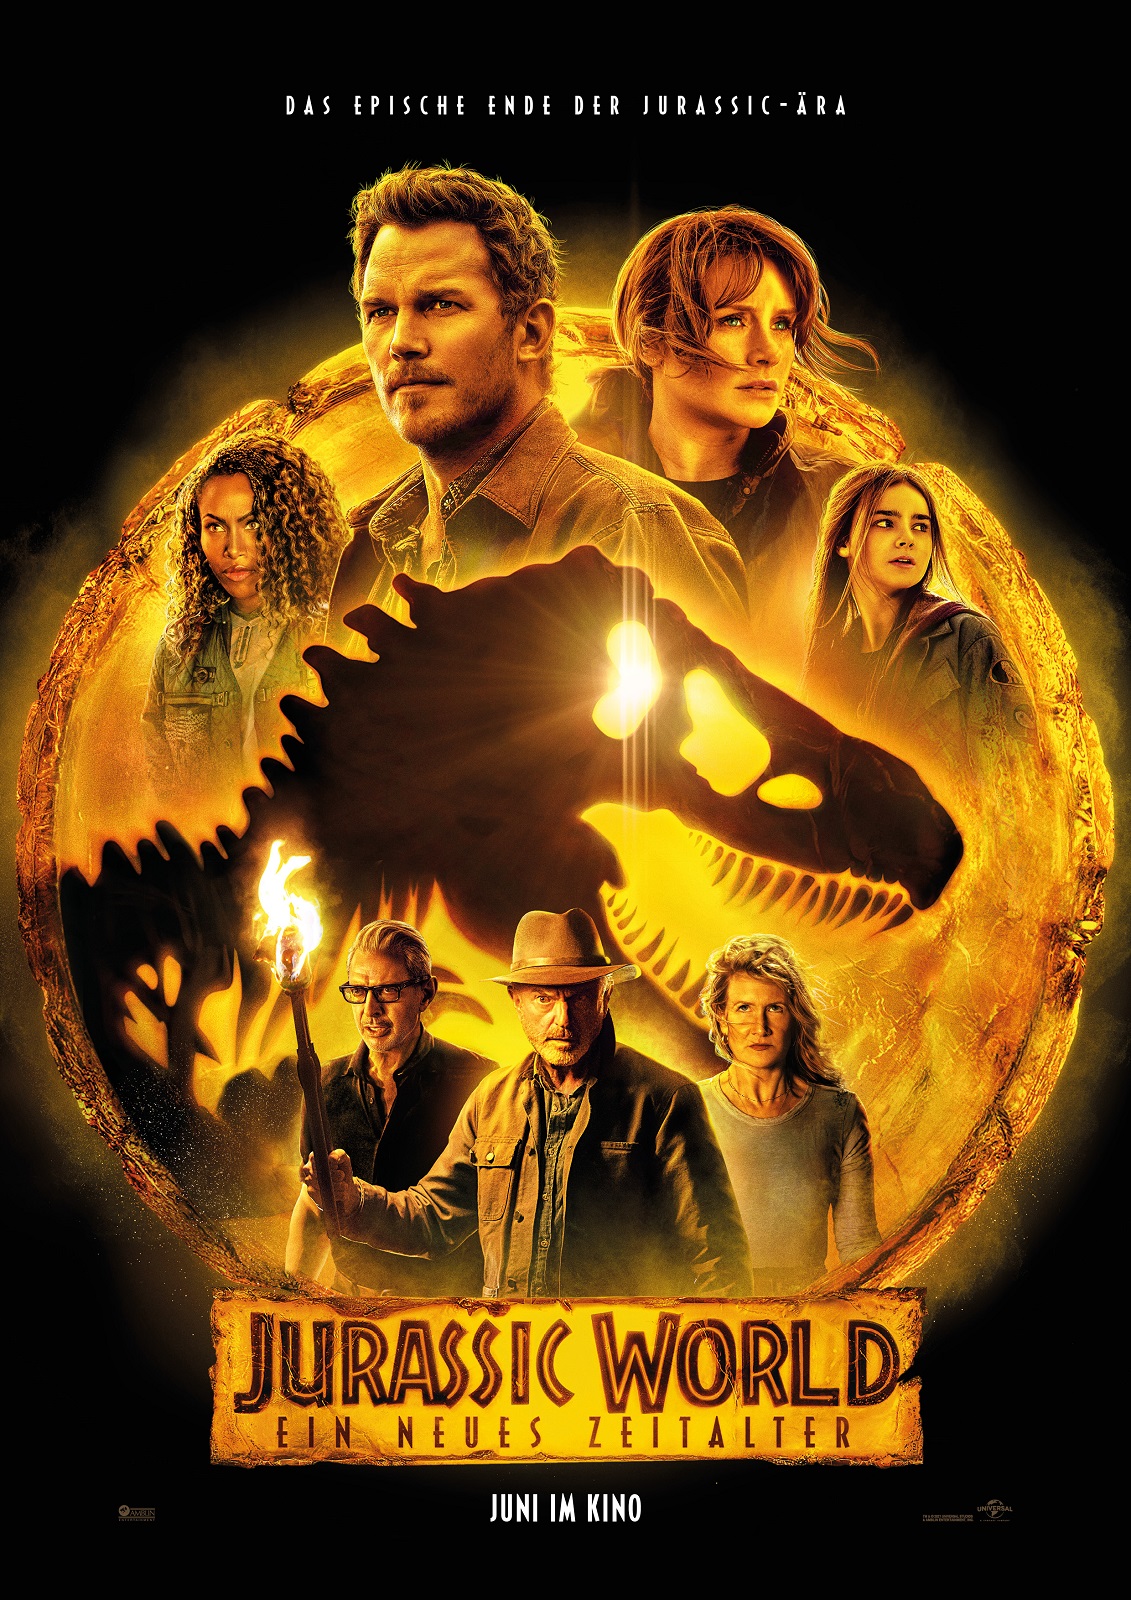 Jurassic World Ein neues Zeitalter finaler Trailer Poster 1